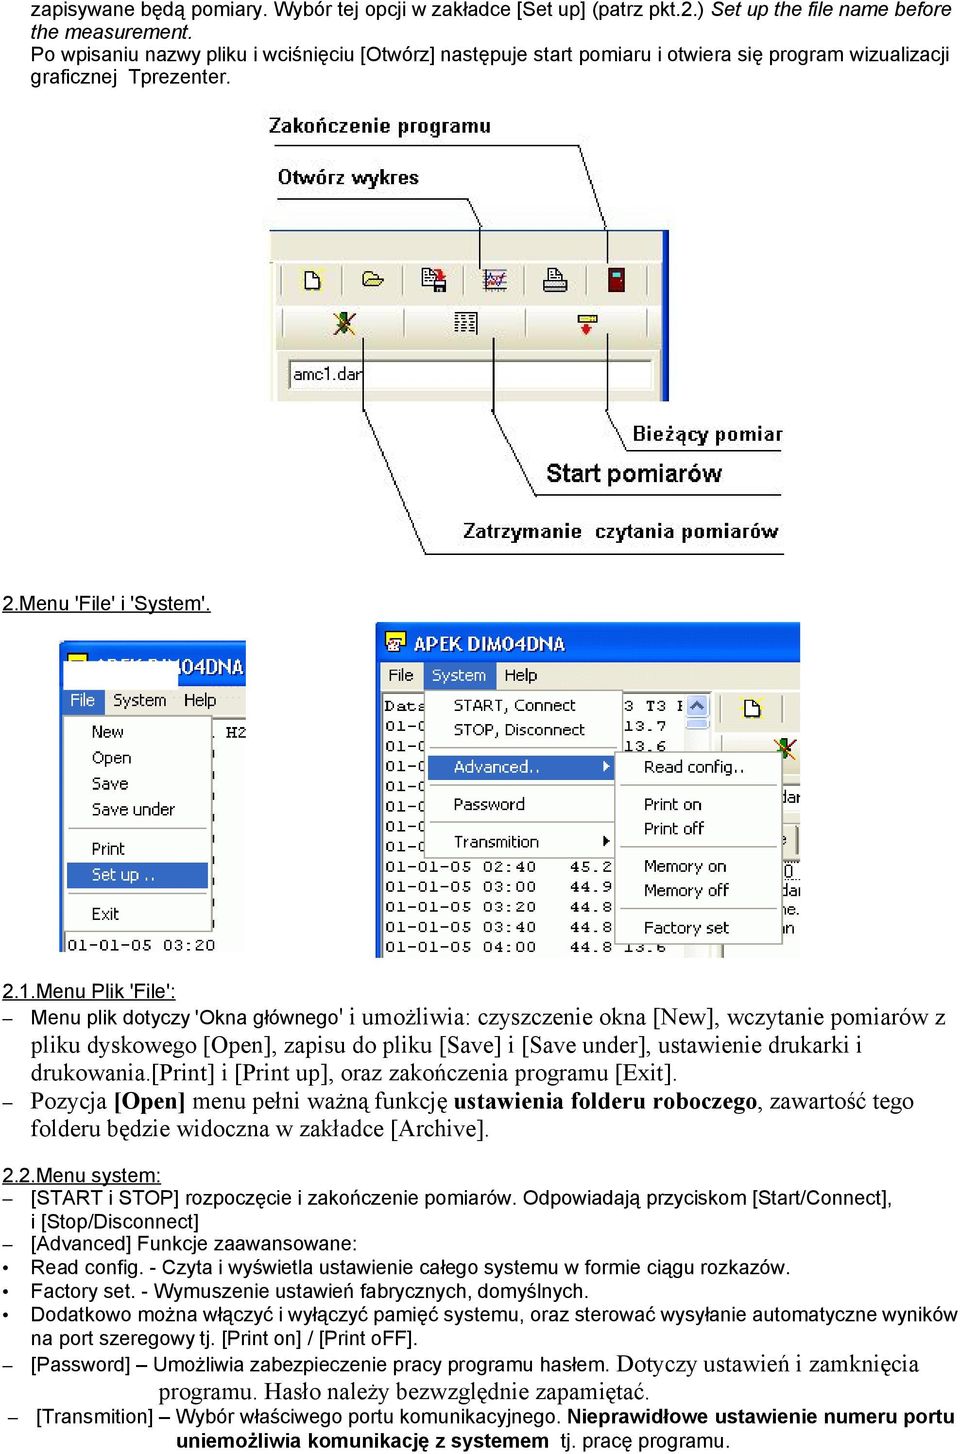 Menu Plik 'File': Menu plik dotyczy 'Okna głównego' i umożliwia: czyszczenie okna [New], wczytanie pomiarów z pliku dyskowego [Open], zapisu do pliku [Save] i [Save under], ustawienie drukarki i